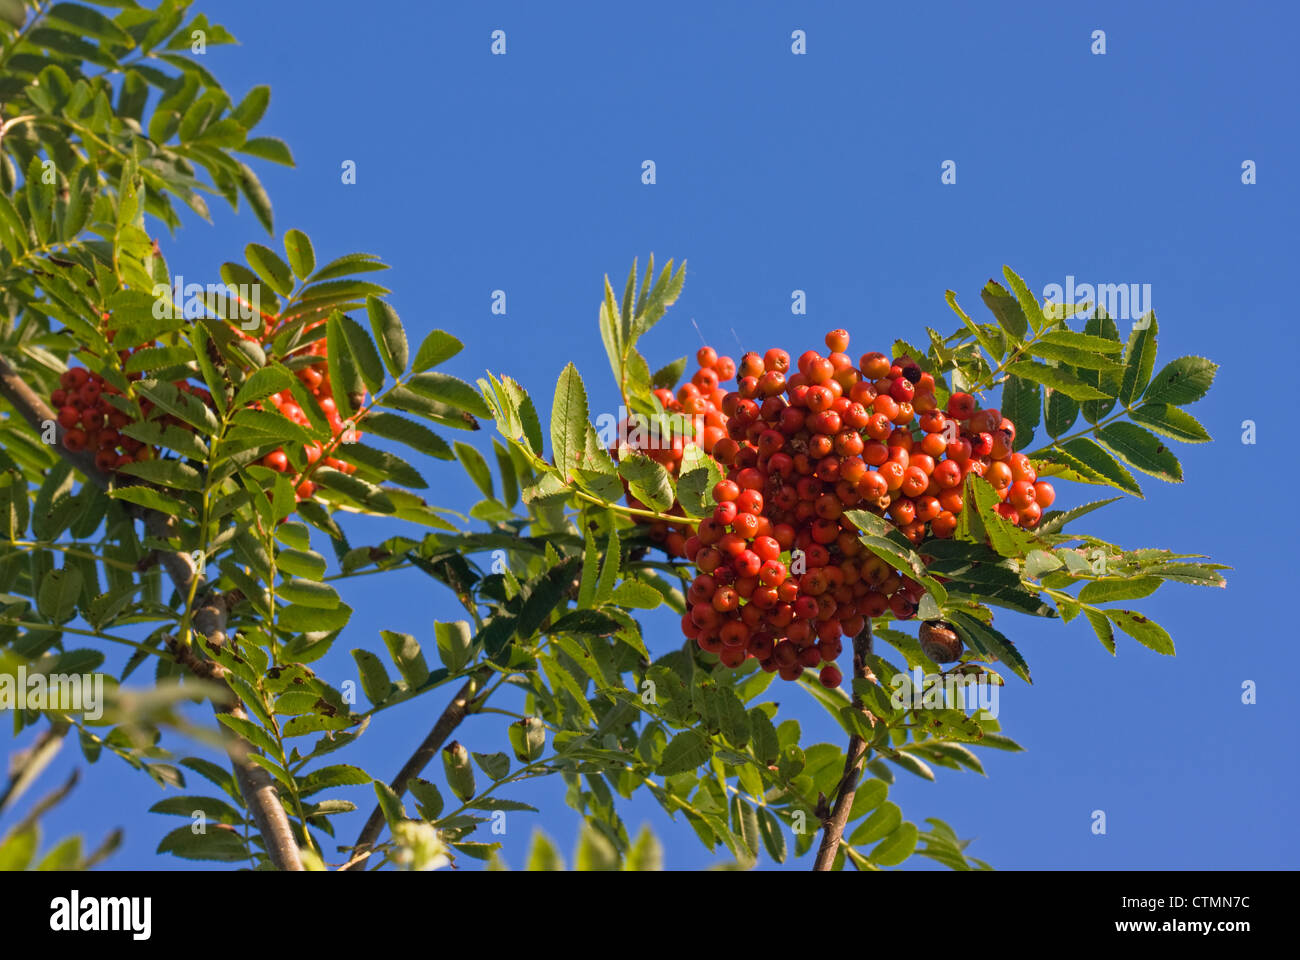 European Rowan fruit against a blue sky Stock Photo